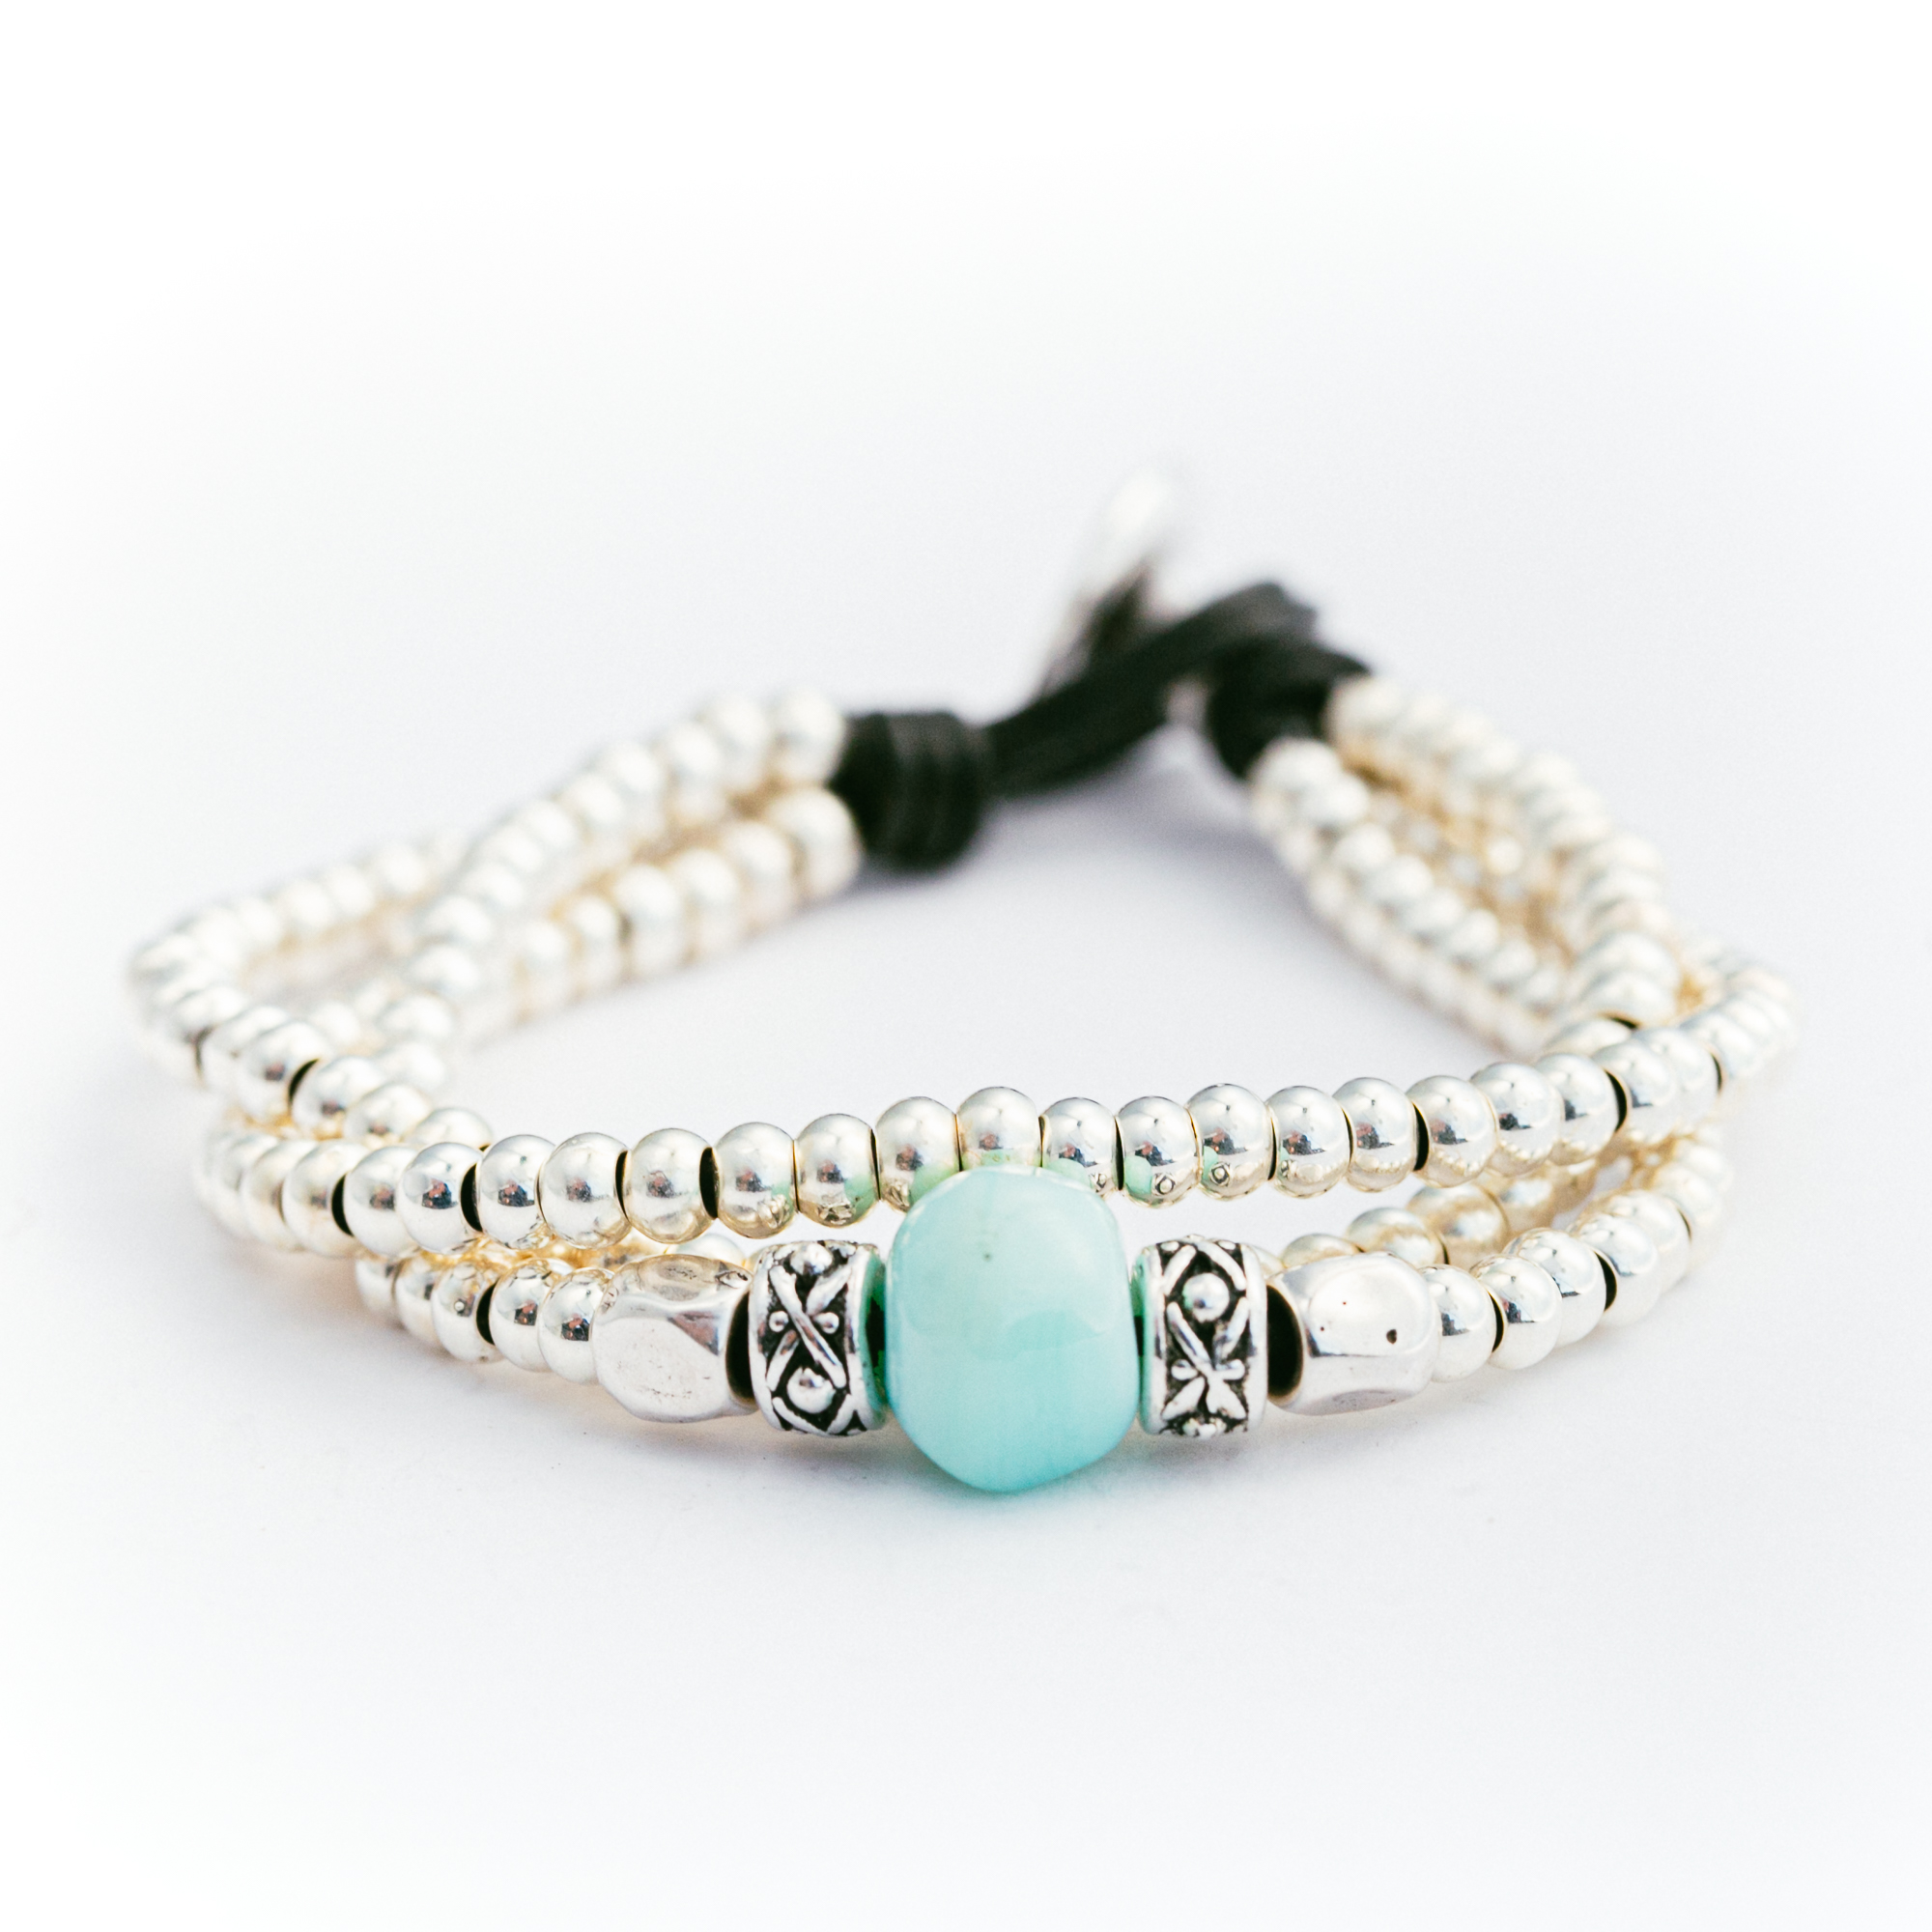 Bracelets | Designs By Carola